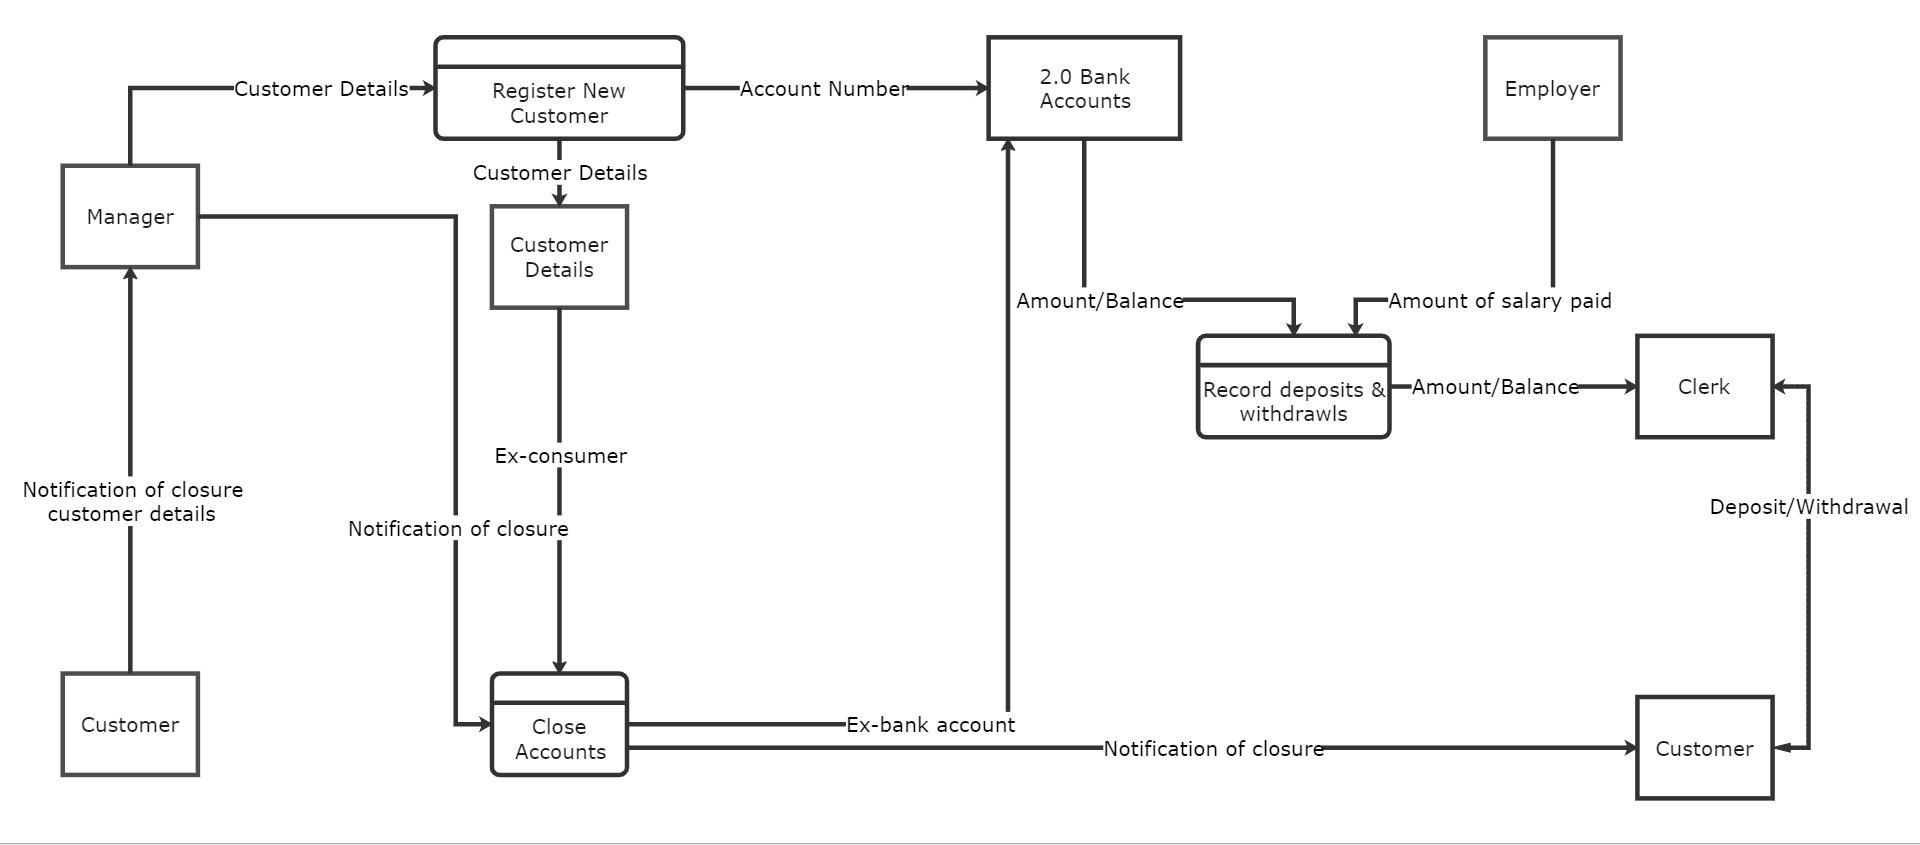 Data Flow Diagram Level 1